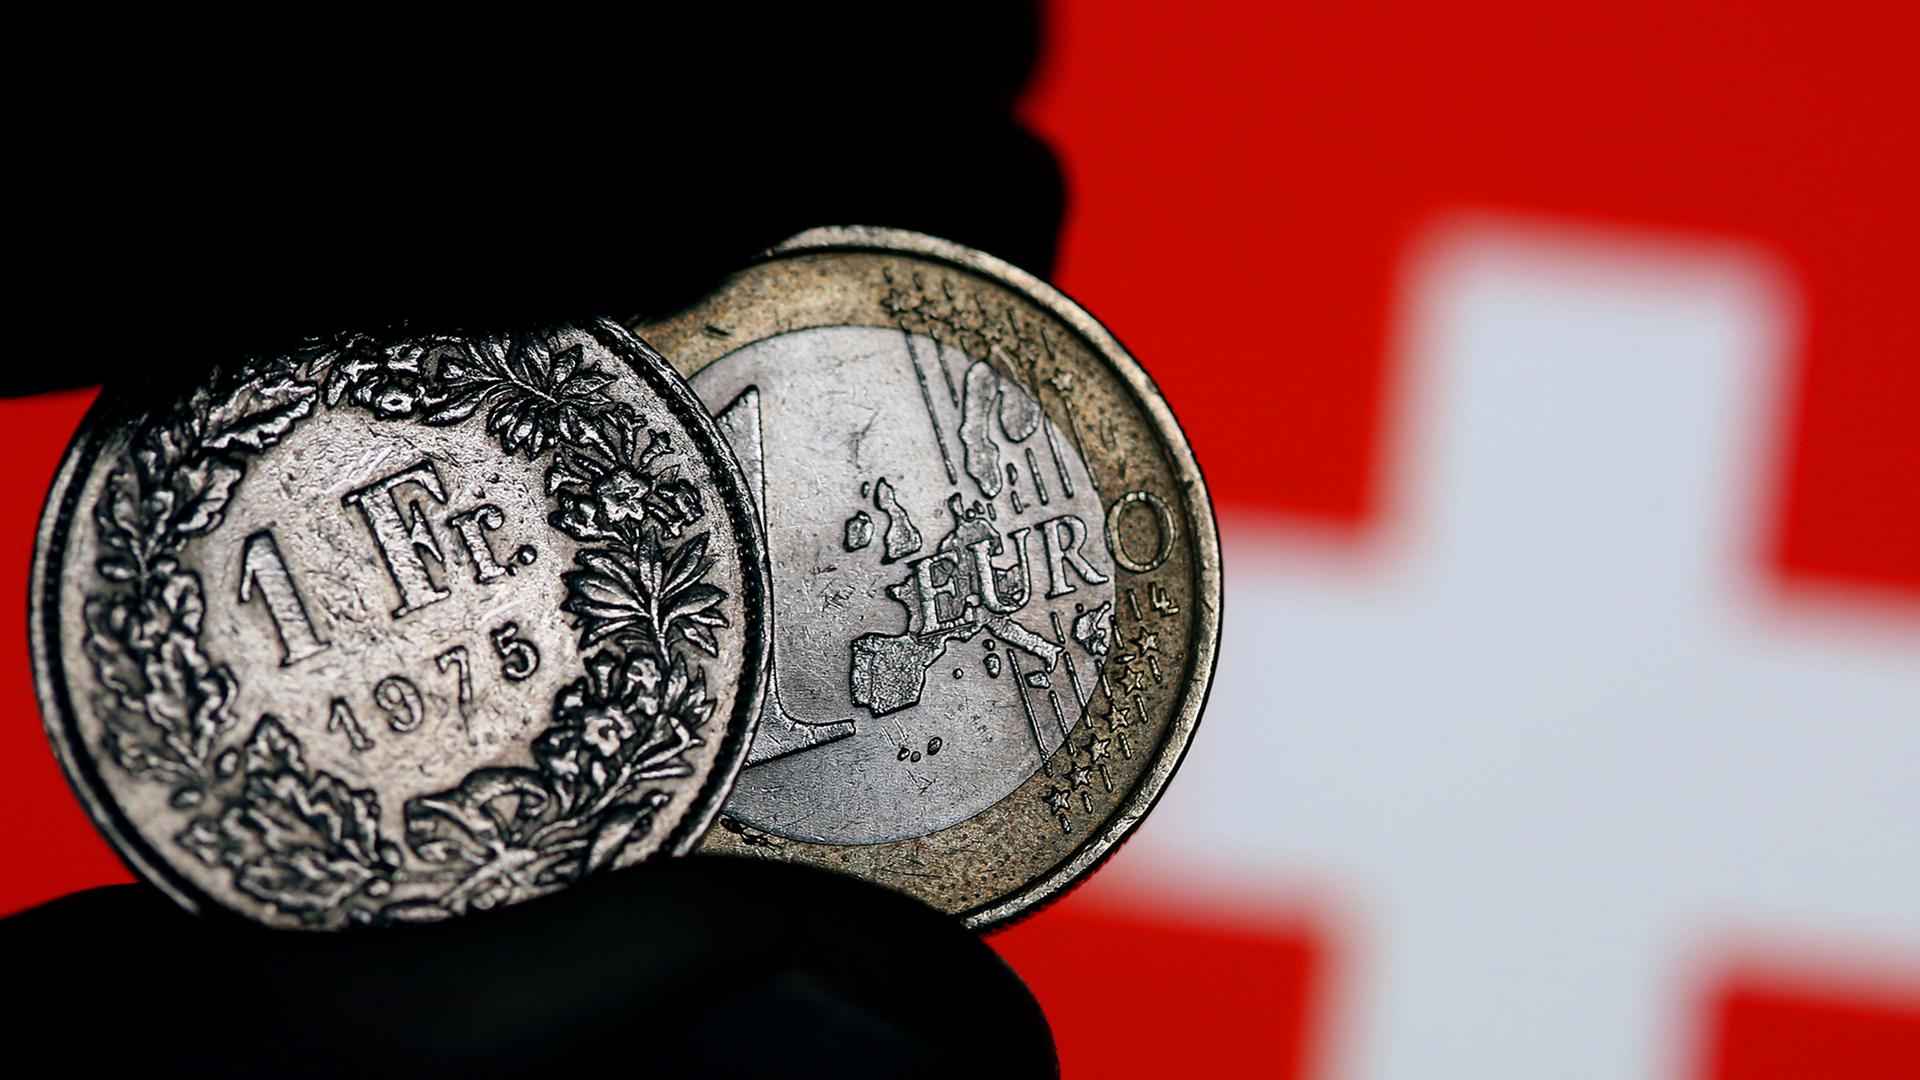 Eine Euro-Münze und ein Schweizer Franken werden am 15.01.2015 in Köln (Nordrhein-Westfalen) vor der Fahne der Eidgenossen zwischen den Fingern gehalten. Völlig überraschend hat die Schweizerische Nationalbank (SNB) am Donnerstag die Kopplung des Franken an den Euro aufgehoben und damit Turbulenzen an den Finanzmärkten ausgelöst.